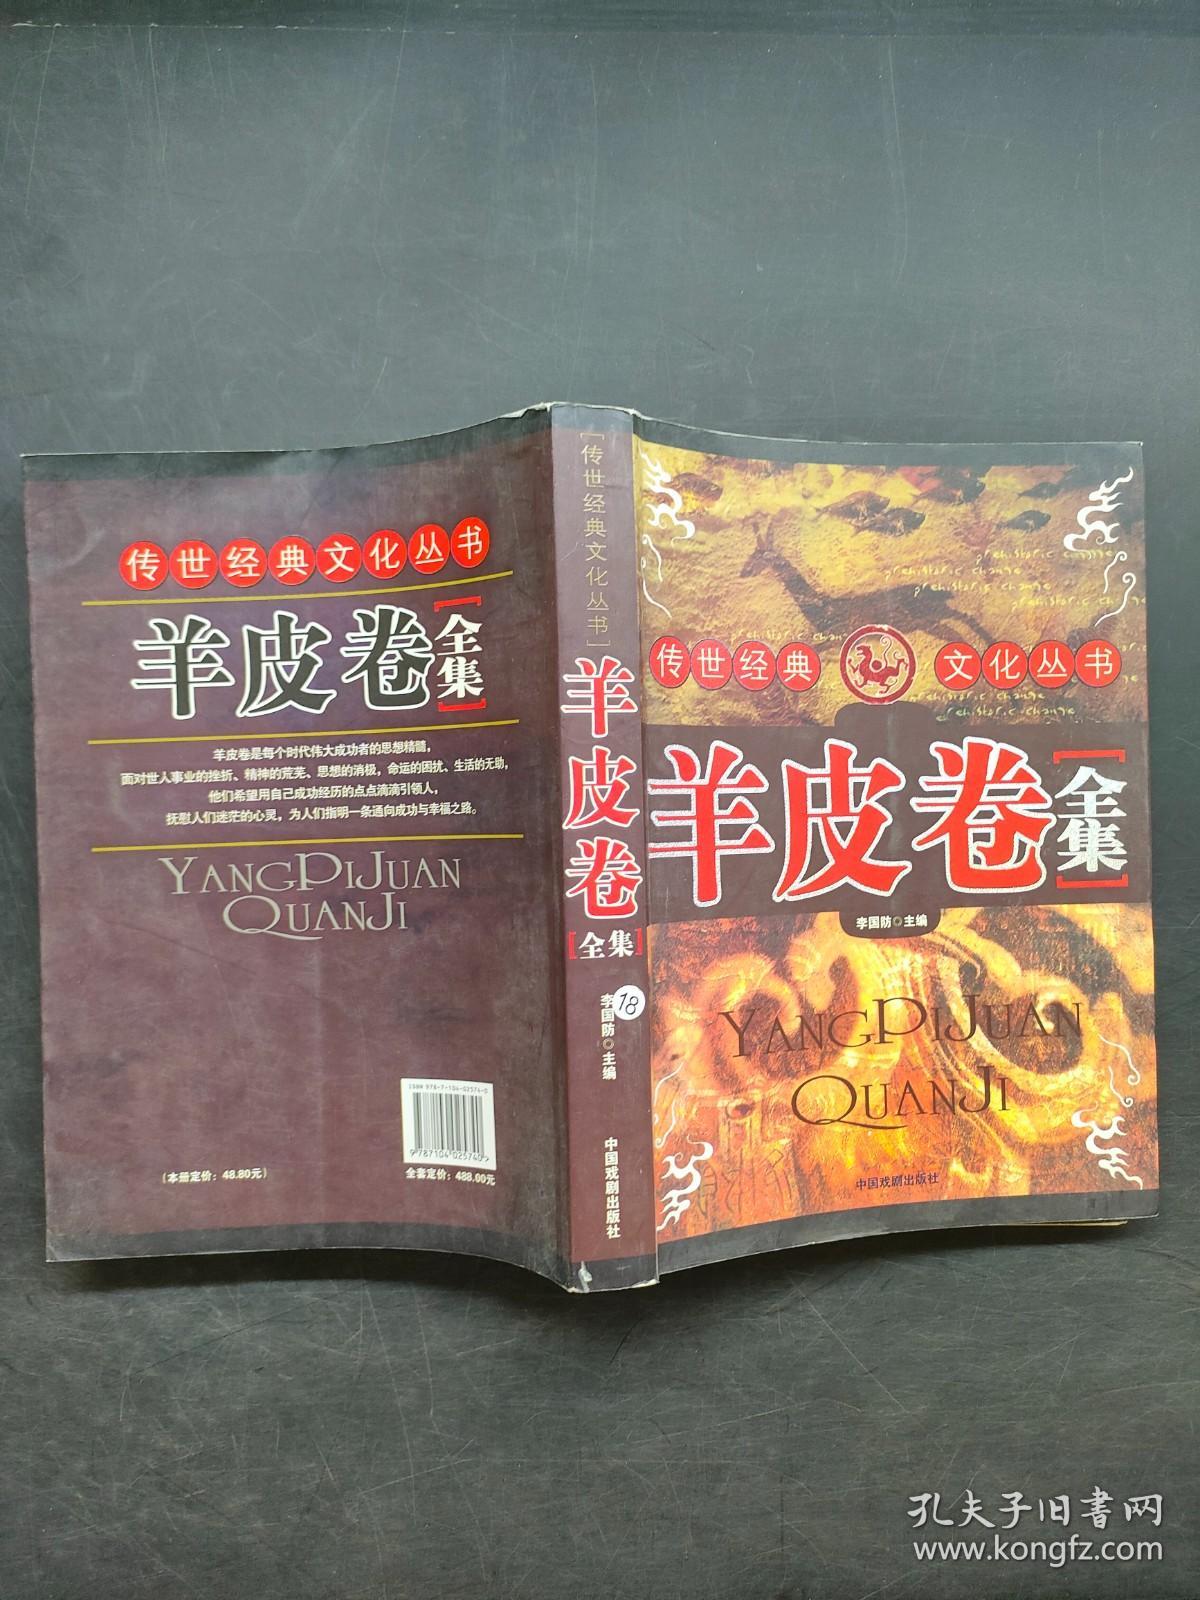 羊皮卷全集 中国戏剧出版社